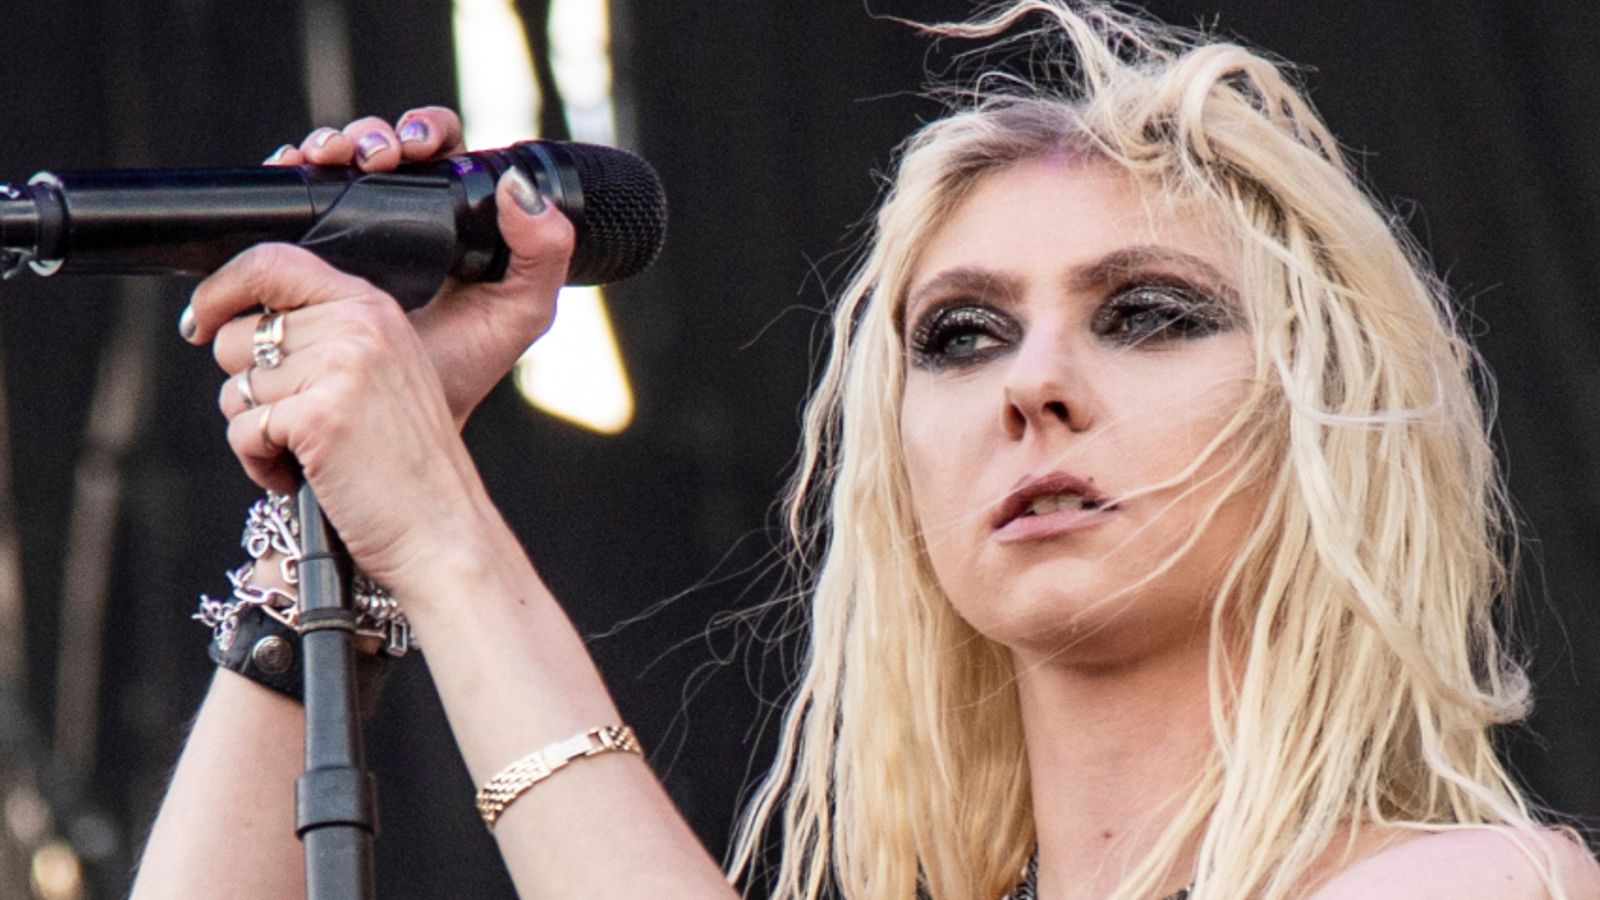 Taylor Momsen nicknamed 'bat girl' after bat bites her during rock show